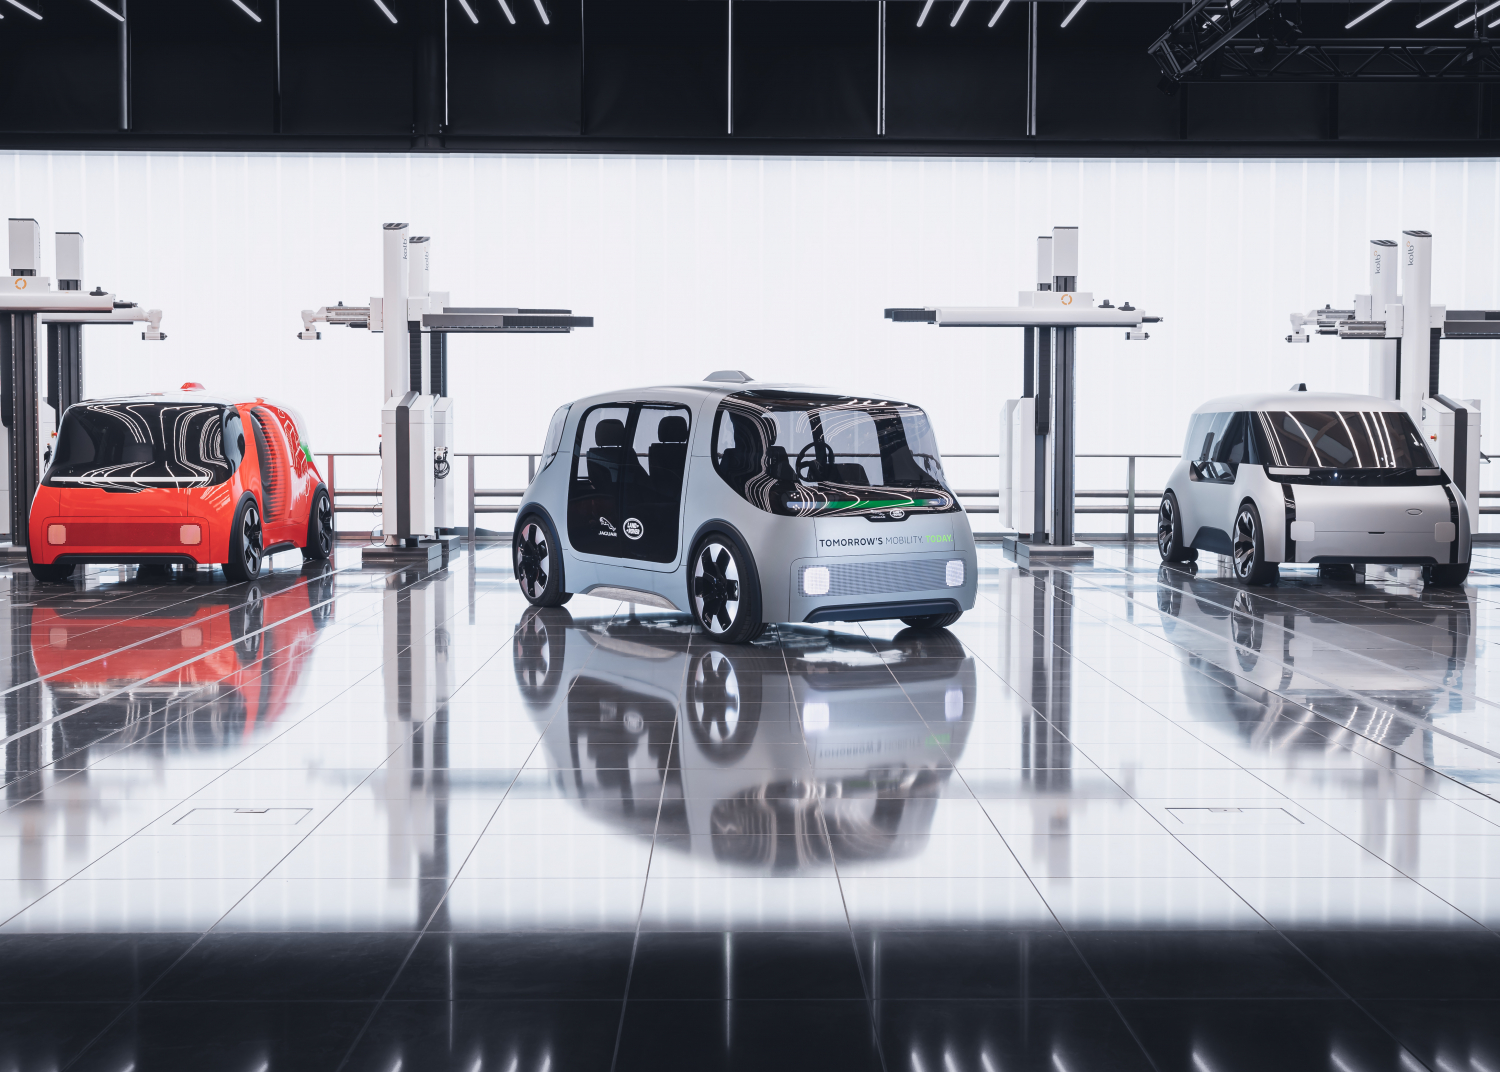 La navette autonome Vector pourra transporter aussi bien des passagers que des marchandises. © Jaguar Land Rover